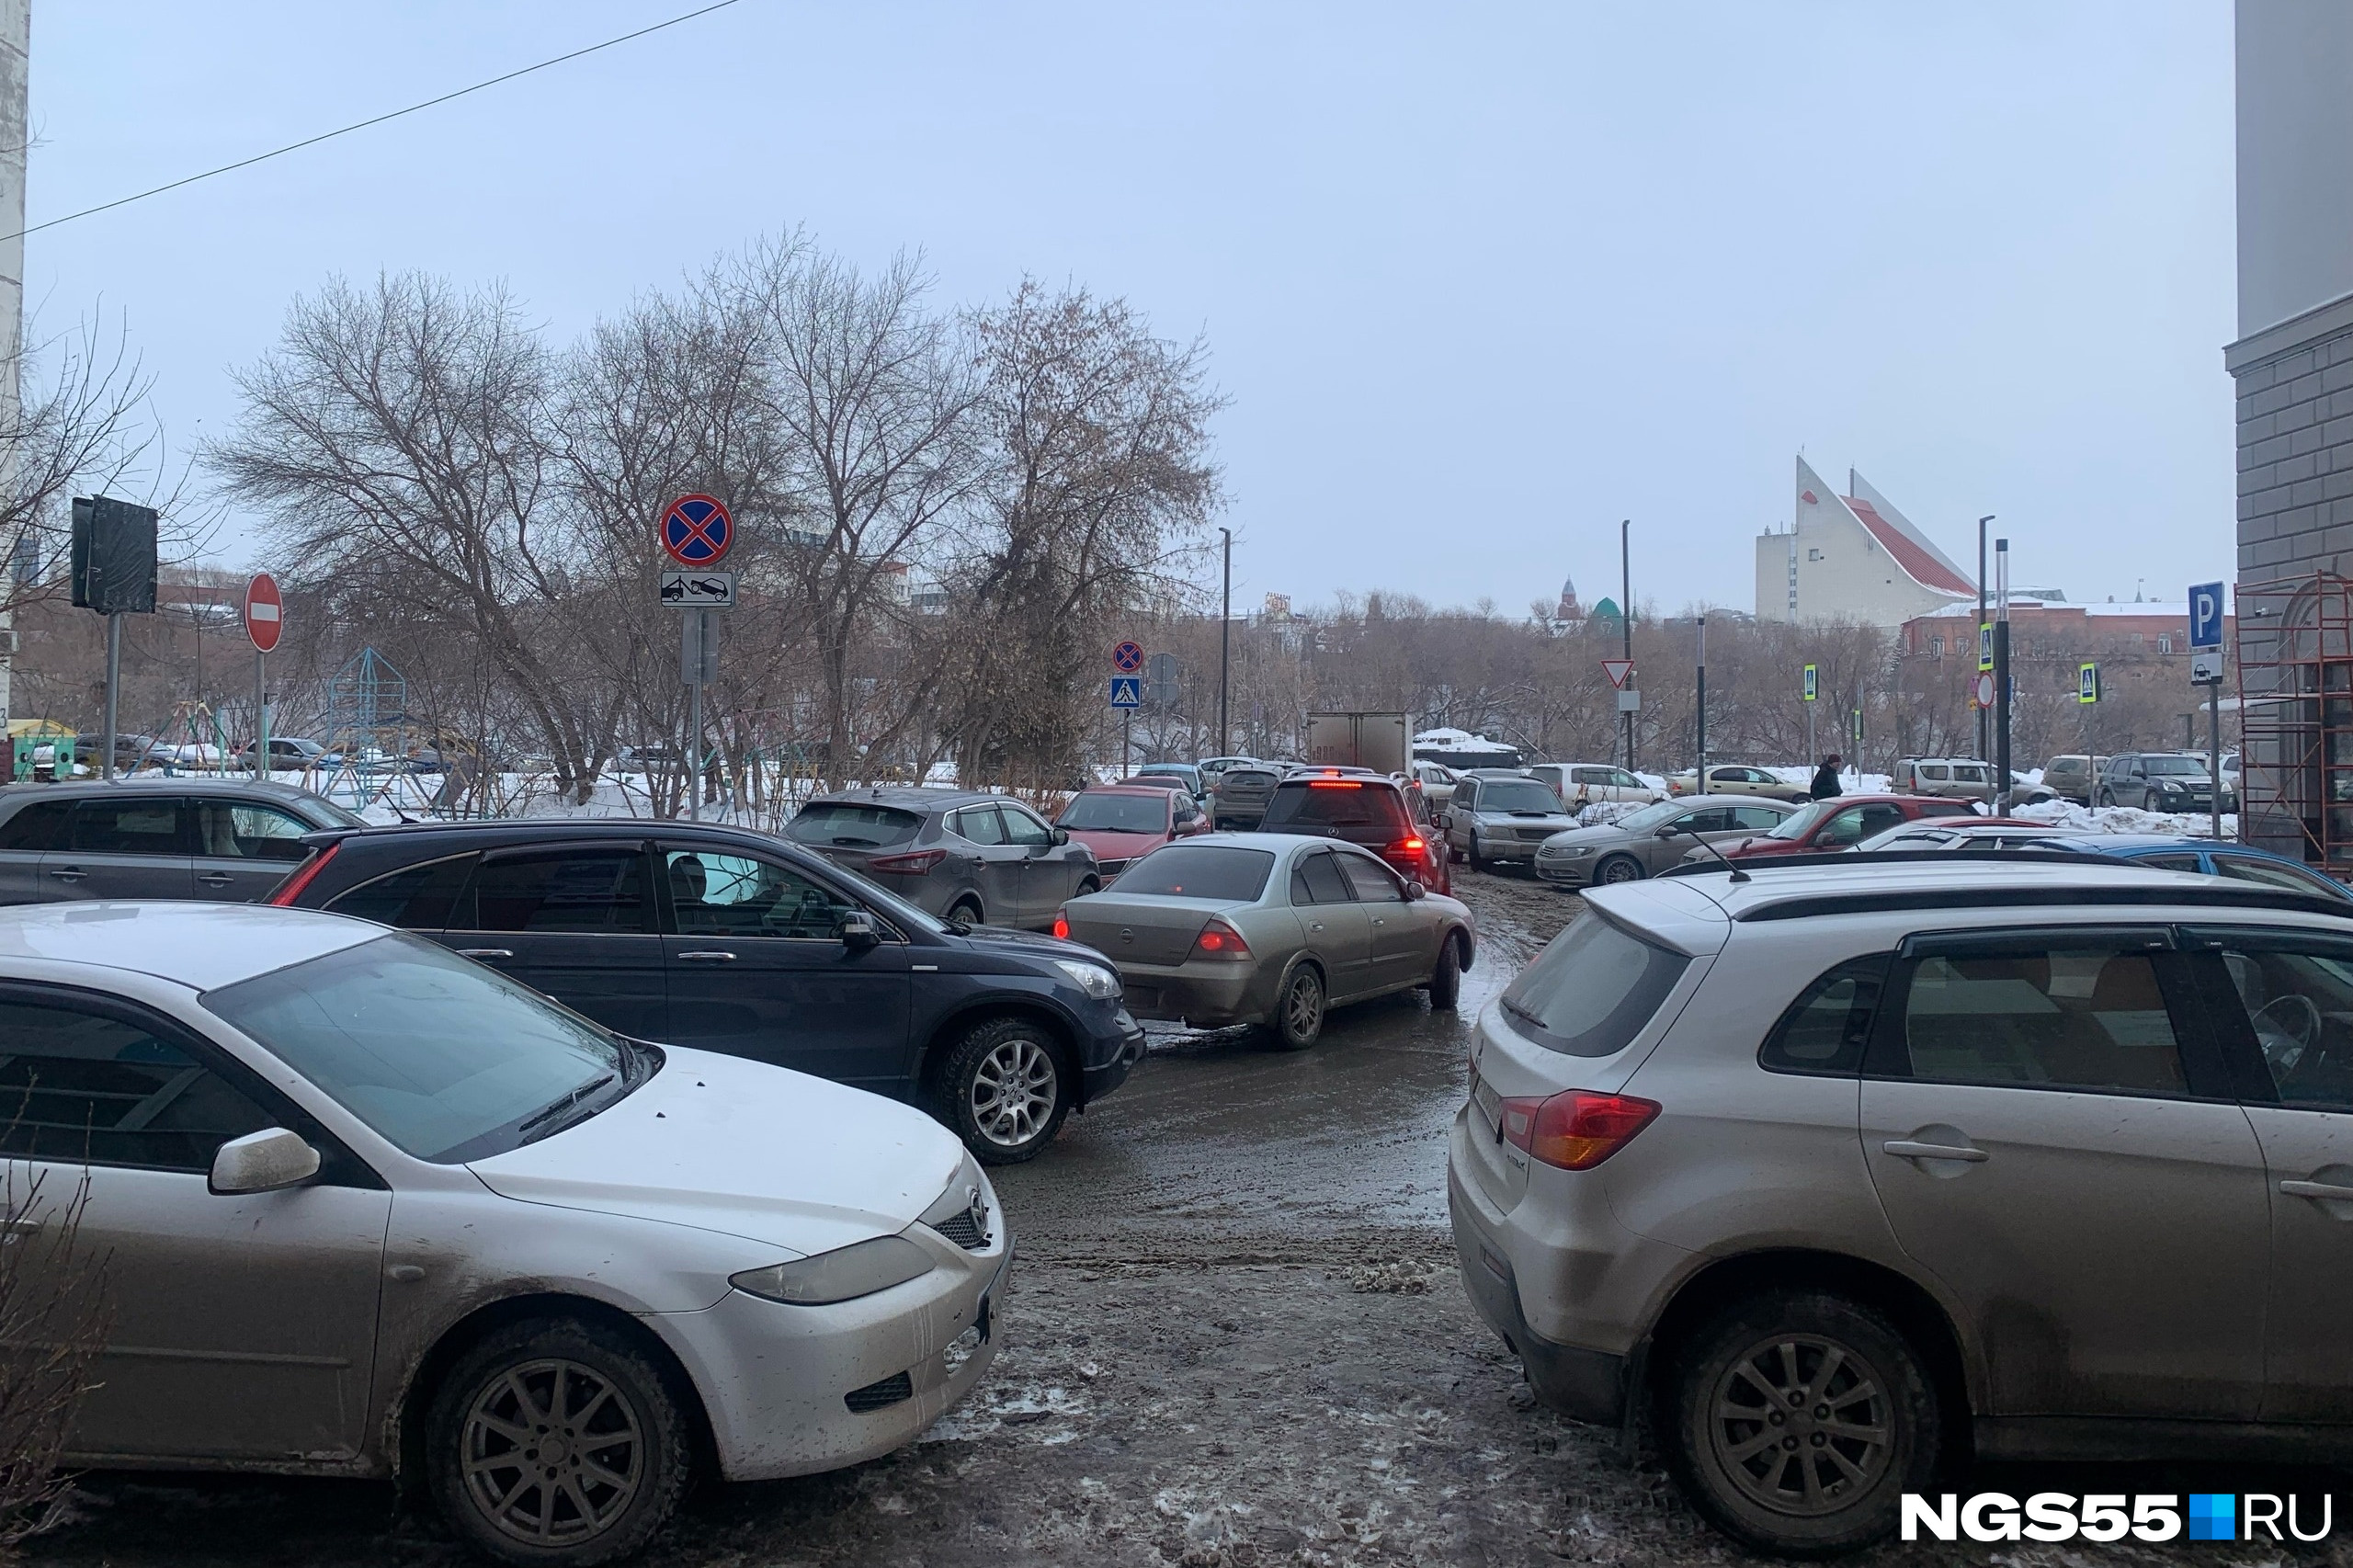 Омск снова встал в 10-балльные пробки, а таксисты просят 273 рубля за одну остановку